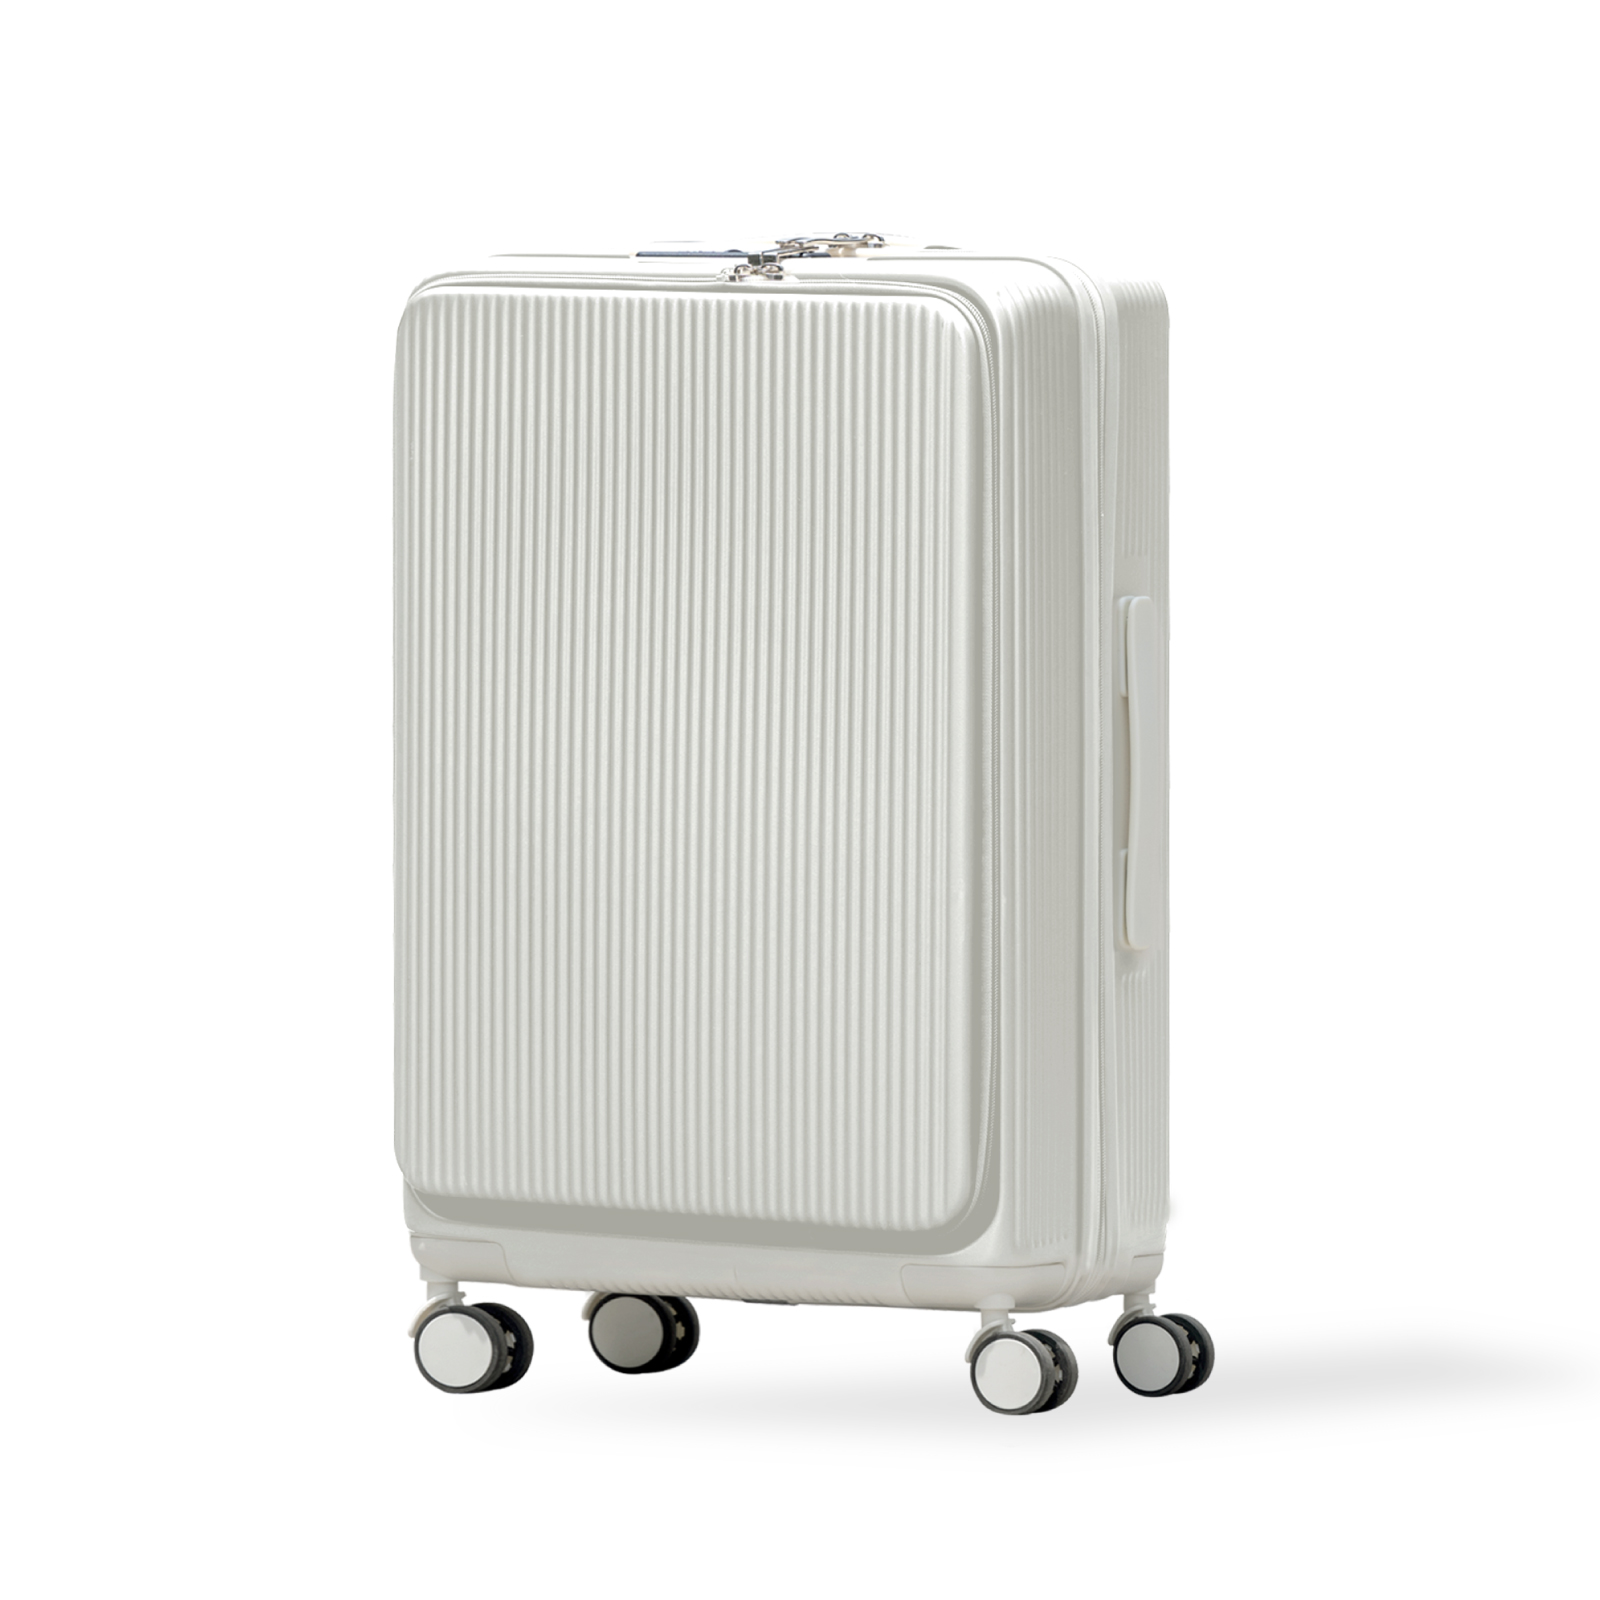 スーツケース 前開き Sサイズ USBポート付き キャリーケース 小型 フロントオープン キャリバック 多機能 カップホルダー付 軽量 大容量 旅行  出張 sc178-20